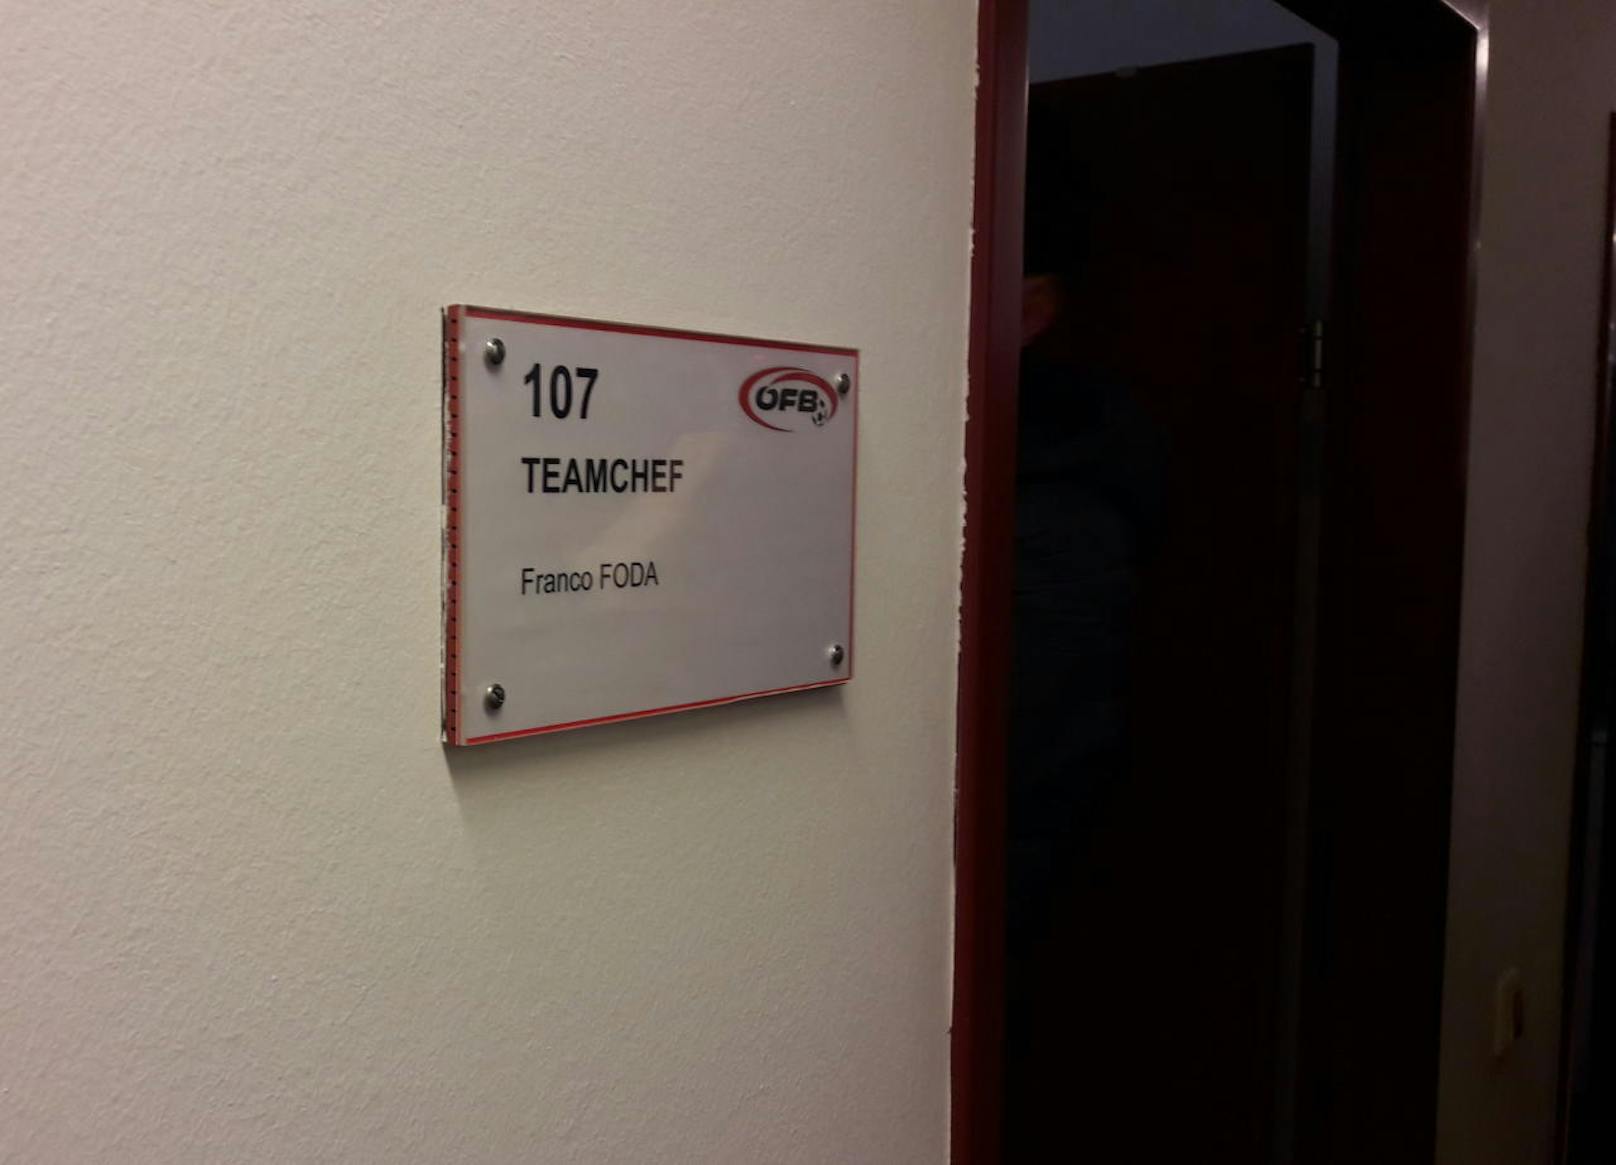 Teamchef Franco Foda hat im Büro mit der Nummer 107 die Lizenz zum Siegen.